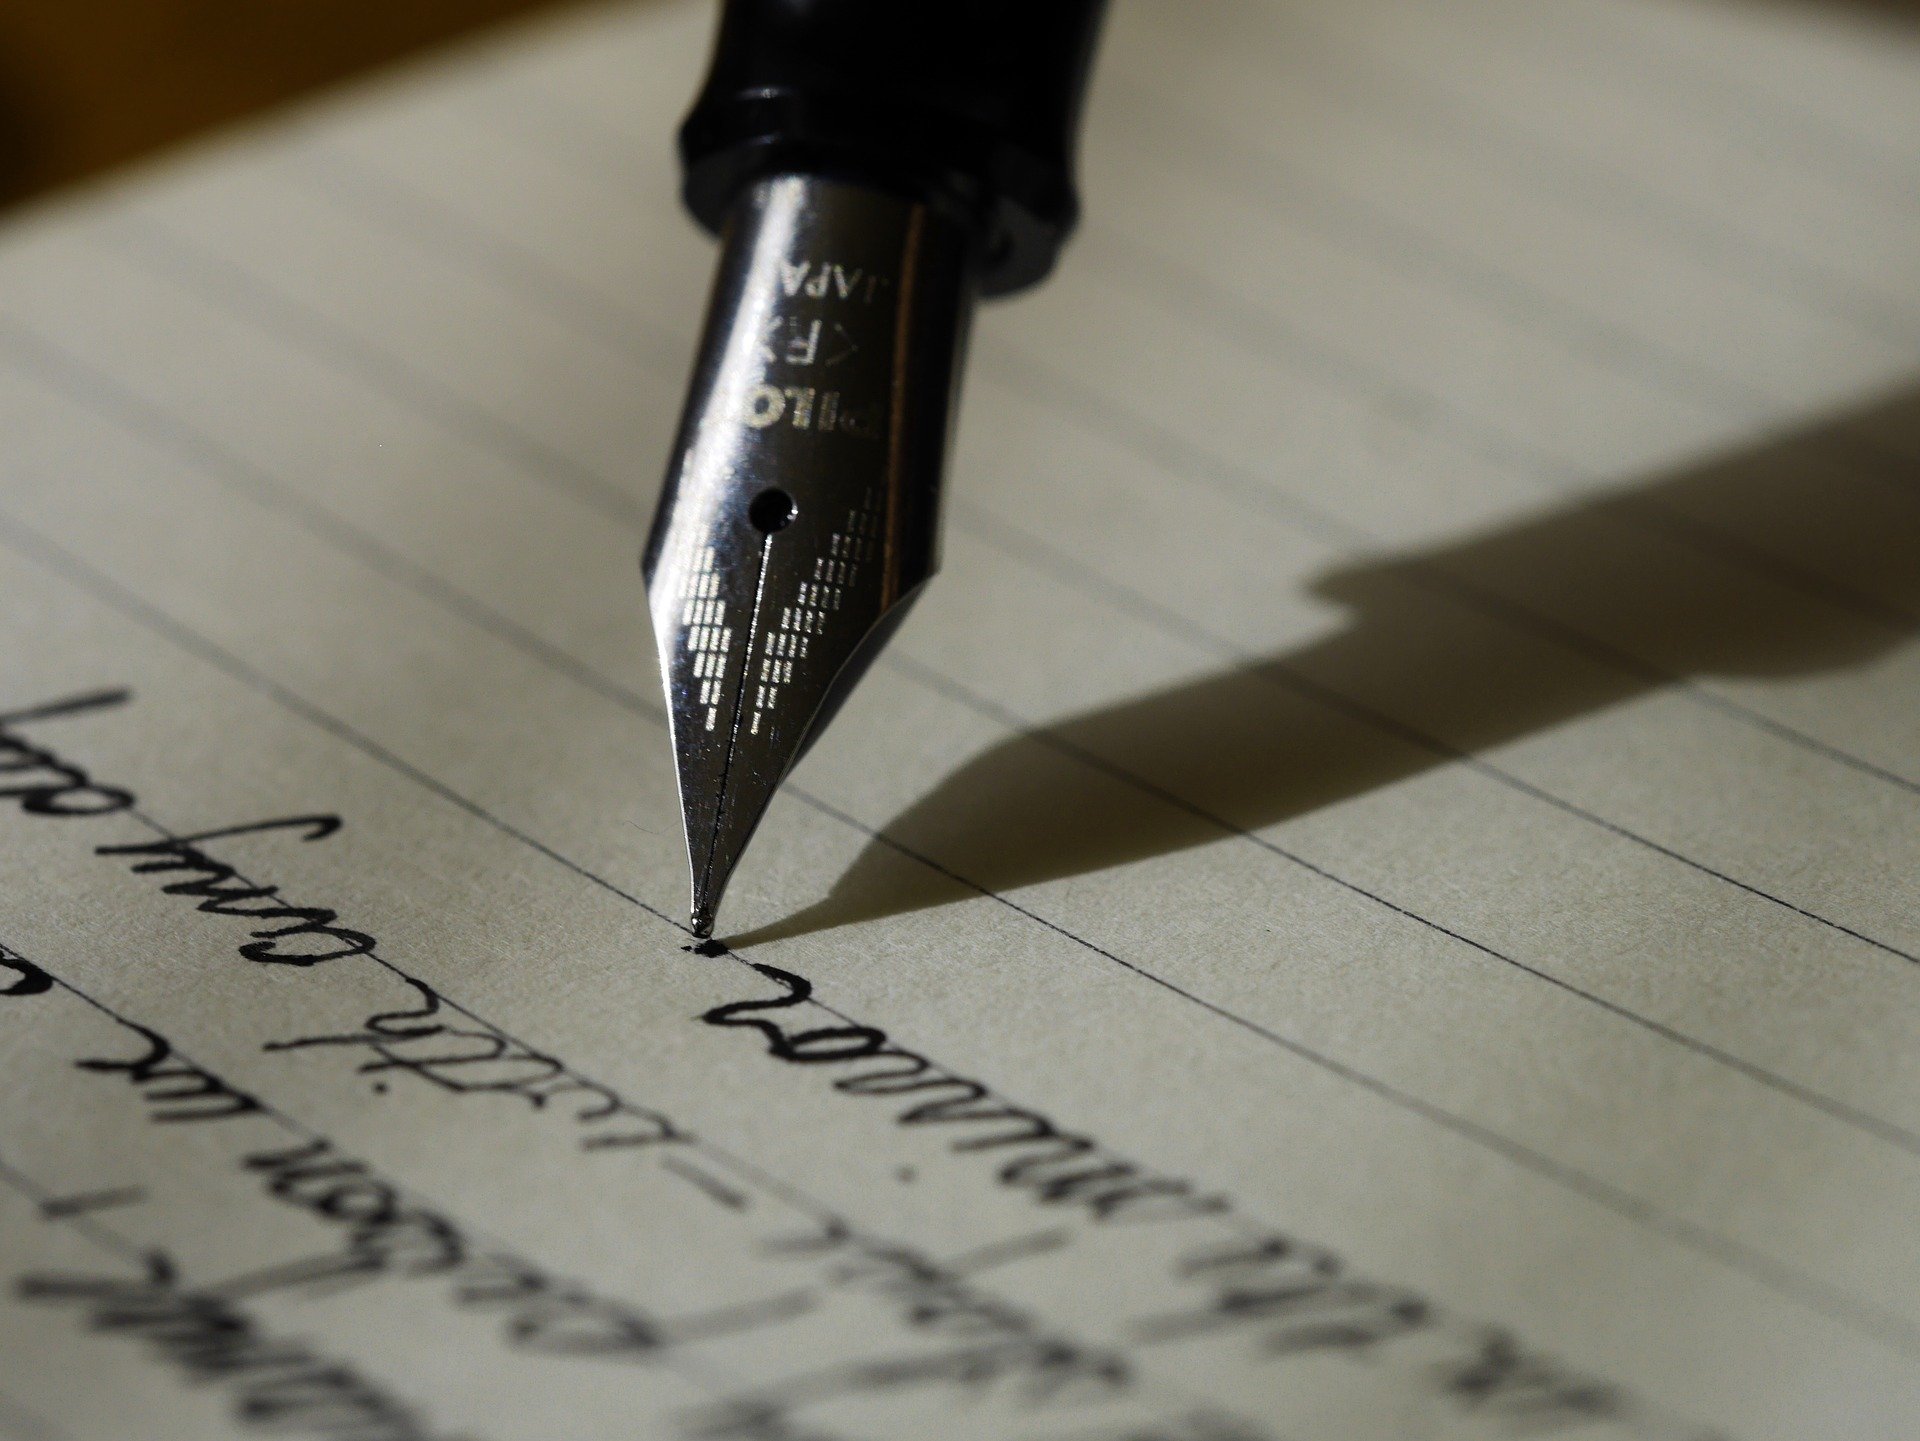 Pluma y carta. Fuente: Pixabay